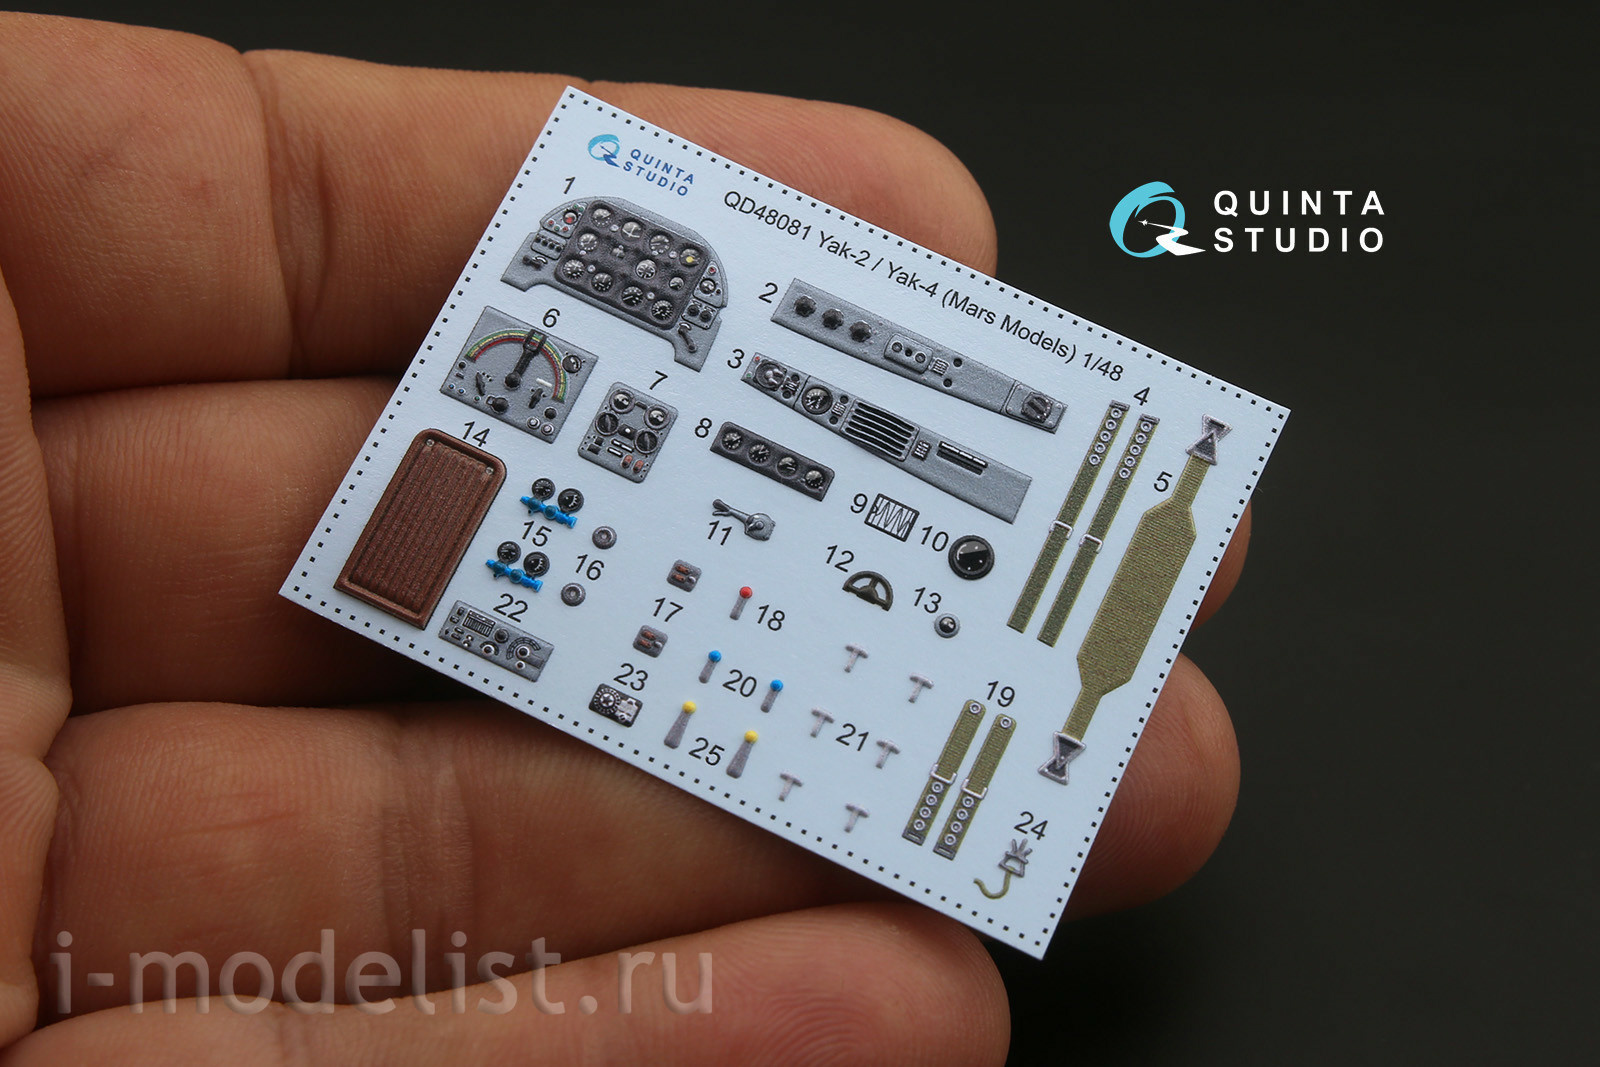 QD48081 Quinta Studio 1/48 3D Декаль интерьера кабины Як-2/Як-4 (для модели Mars Models)